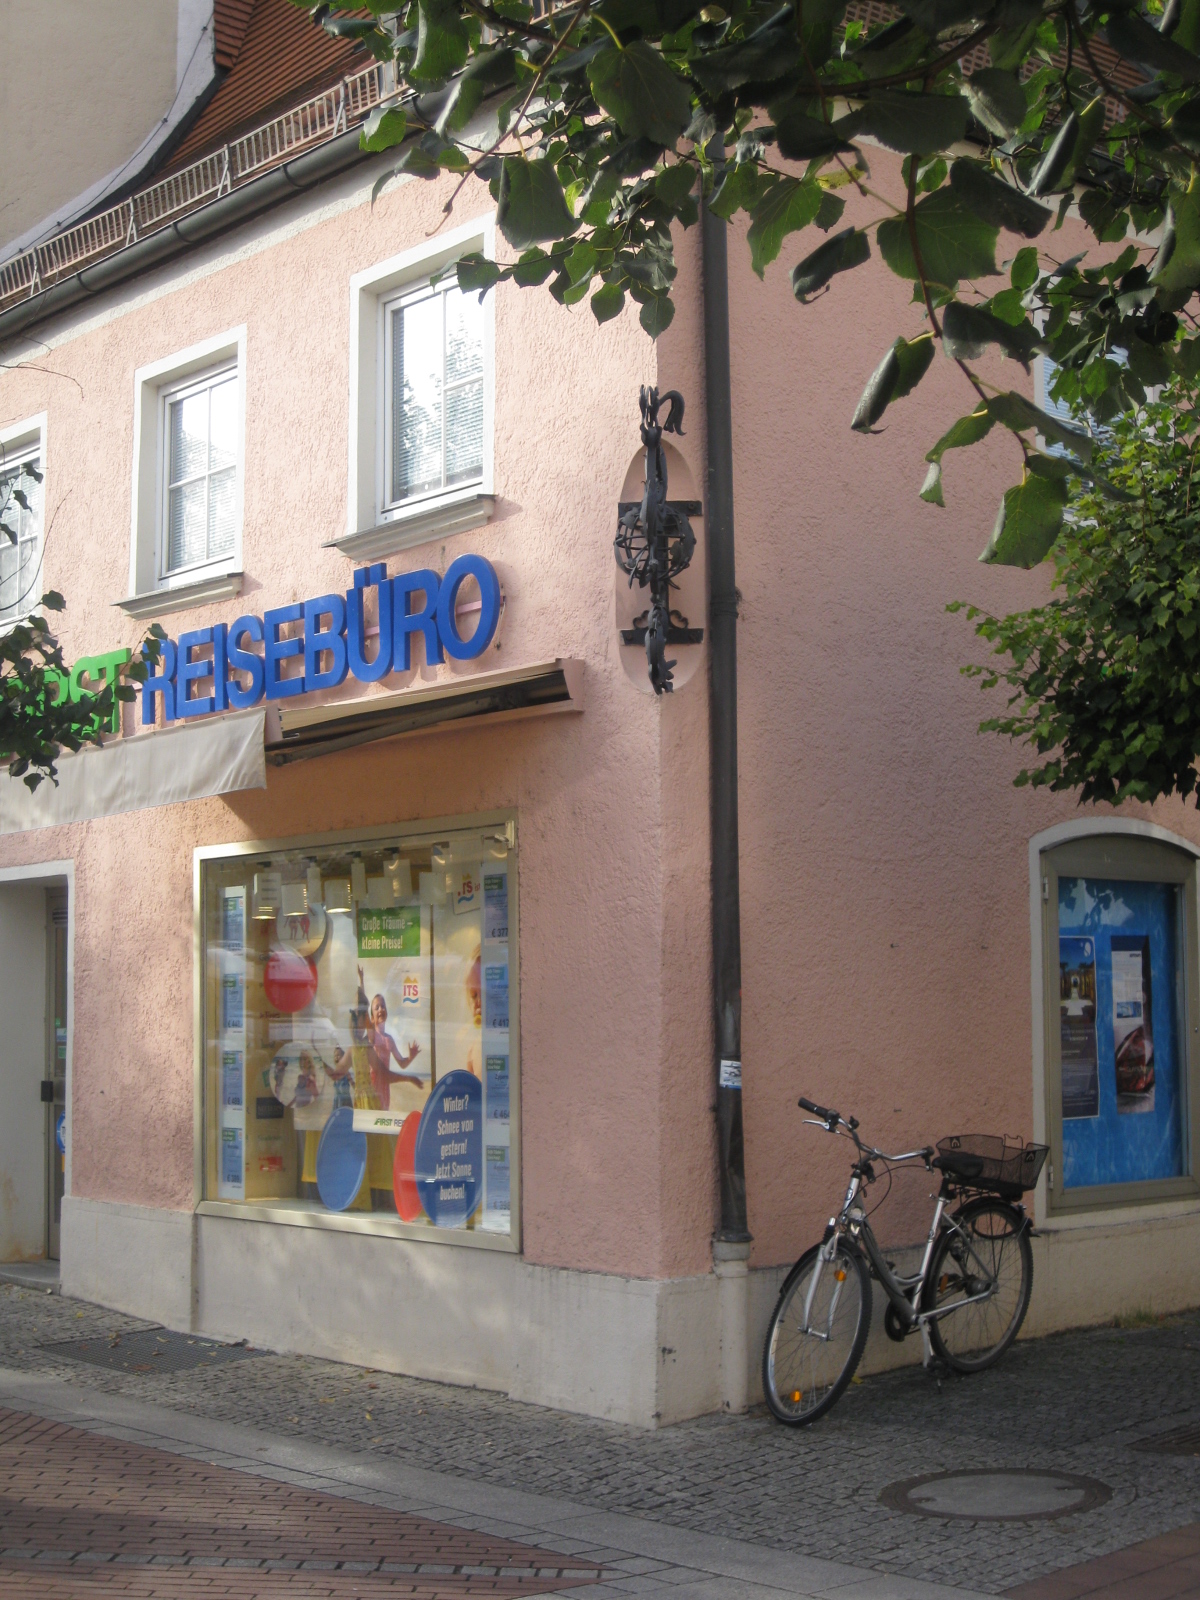 FIRST Reisebüro in Erding am Schrannenplatz